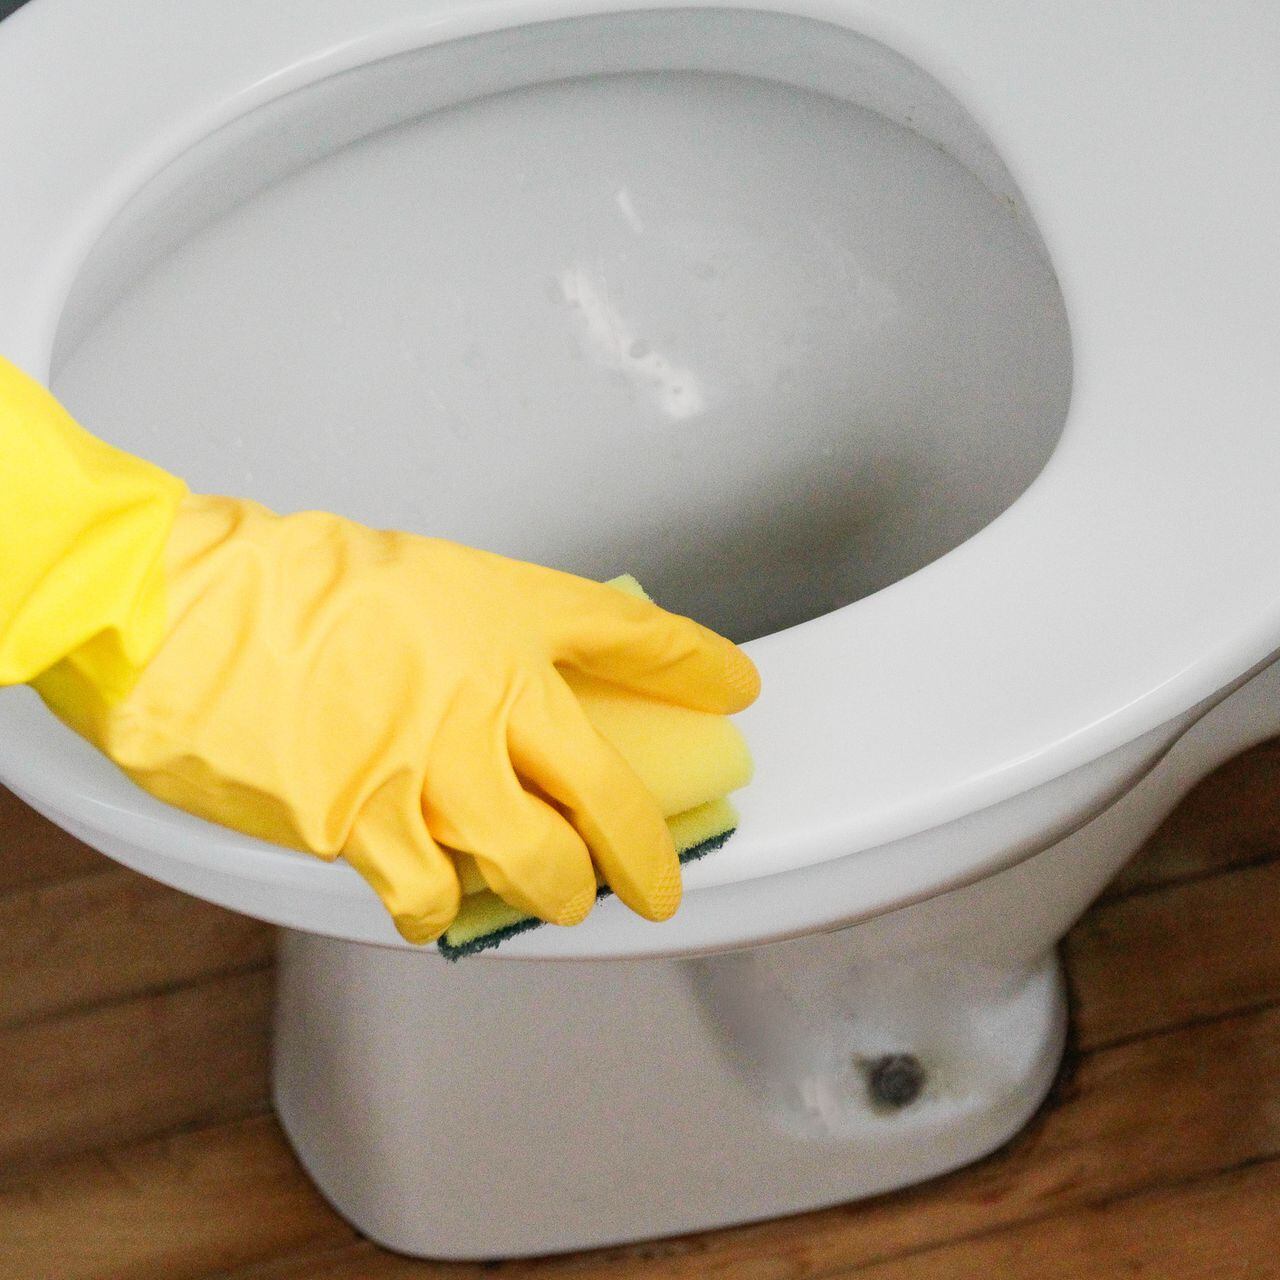 Cómo limpiar el sarro en tu hogar con limón, pasta dental, vinagre